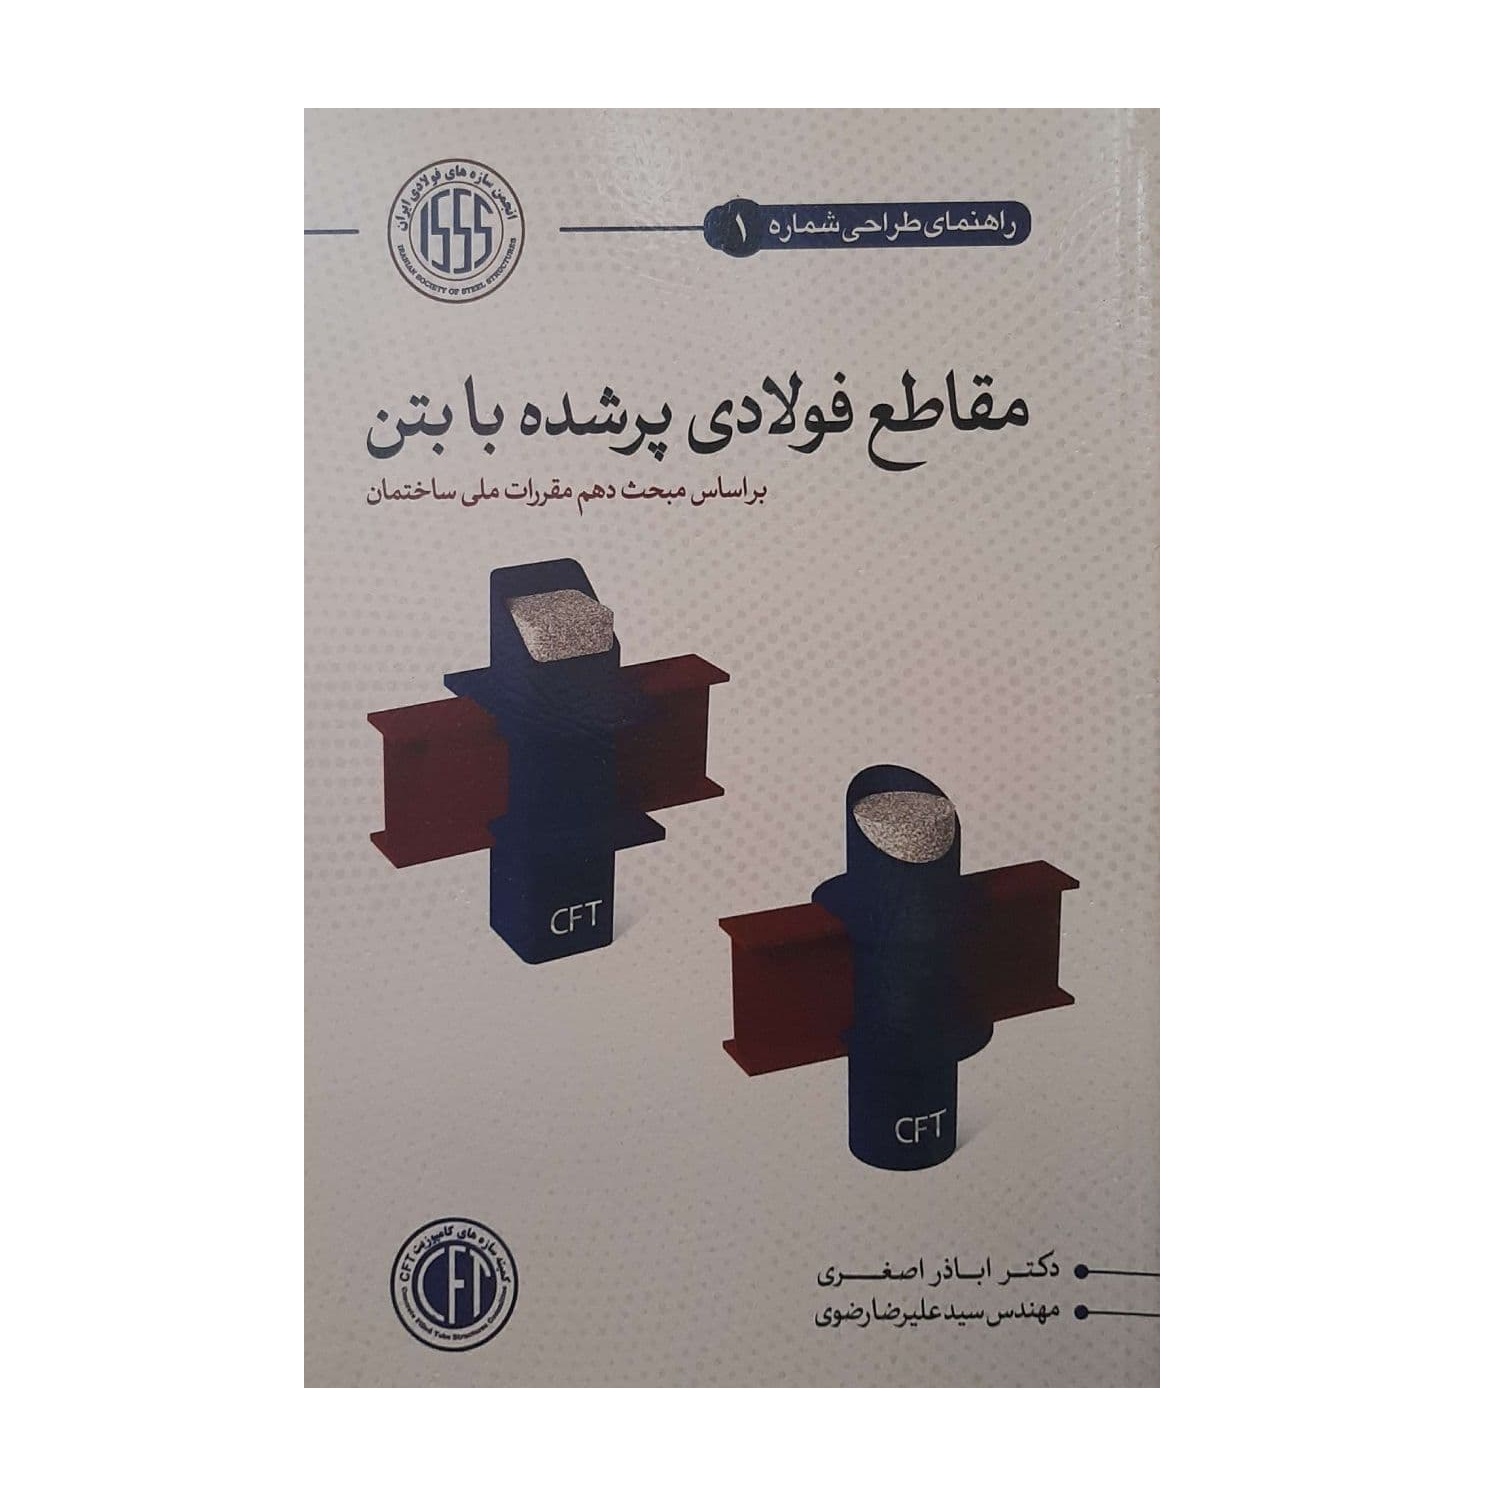 کتاب مقاطع فولادی پر شده با بتن اثر اباذر اصغری و سید علیرضا رضوی انتشارات سیمای دانش